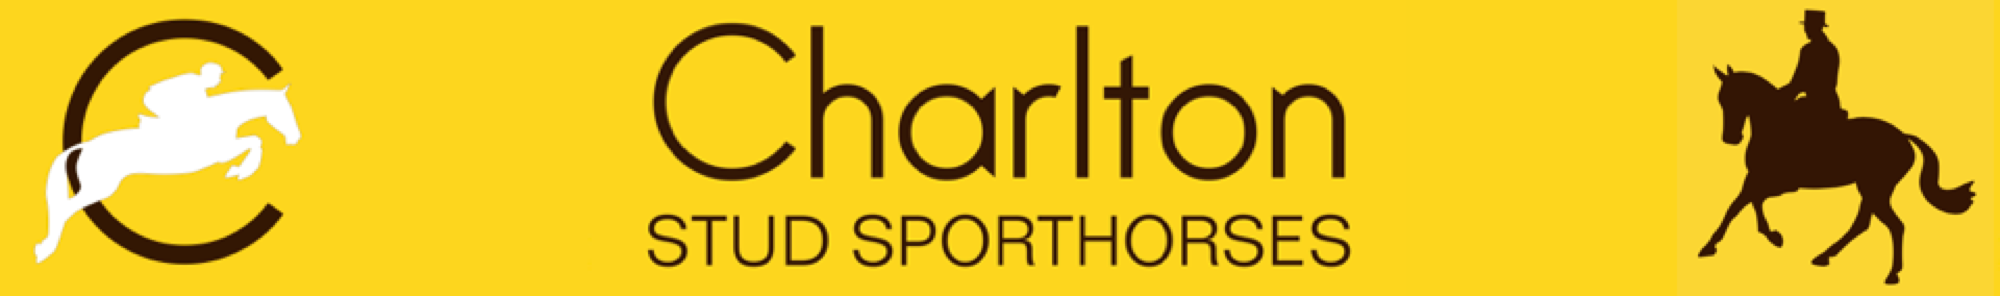 Charlton Stud Sporthorses